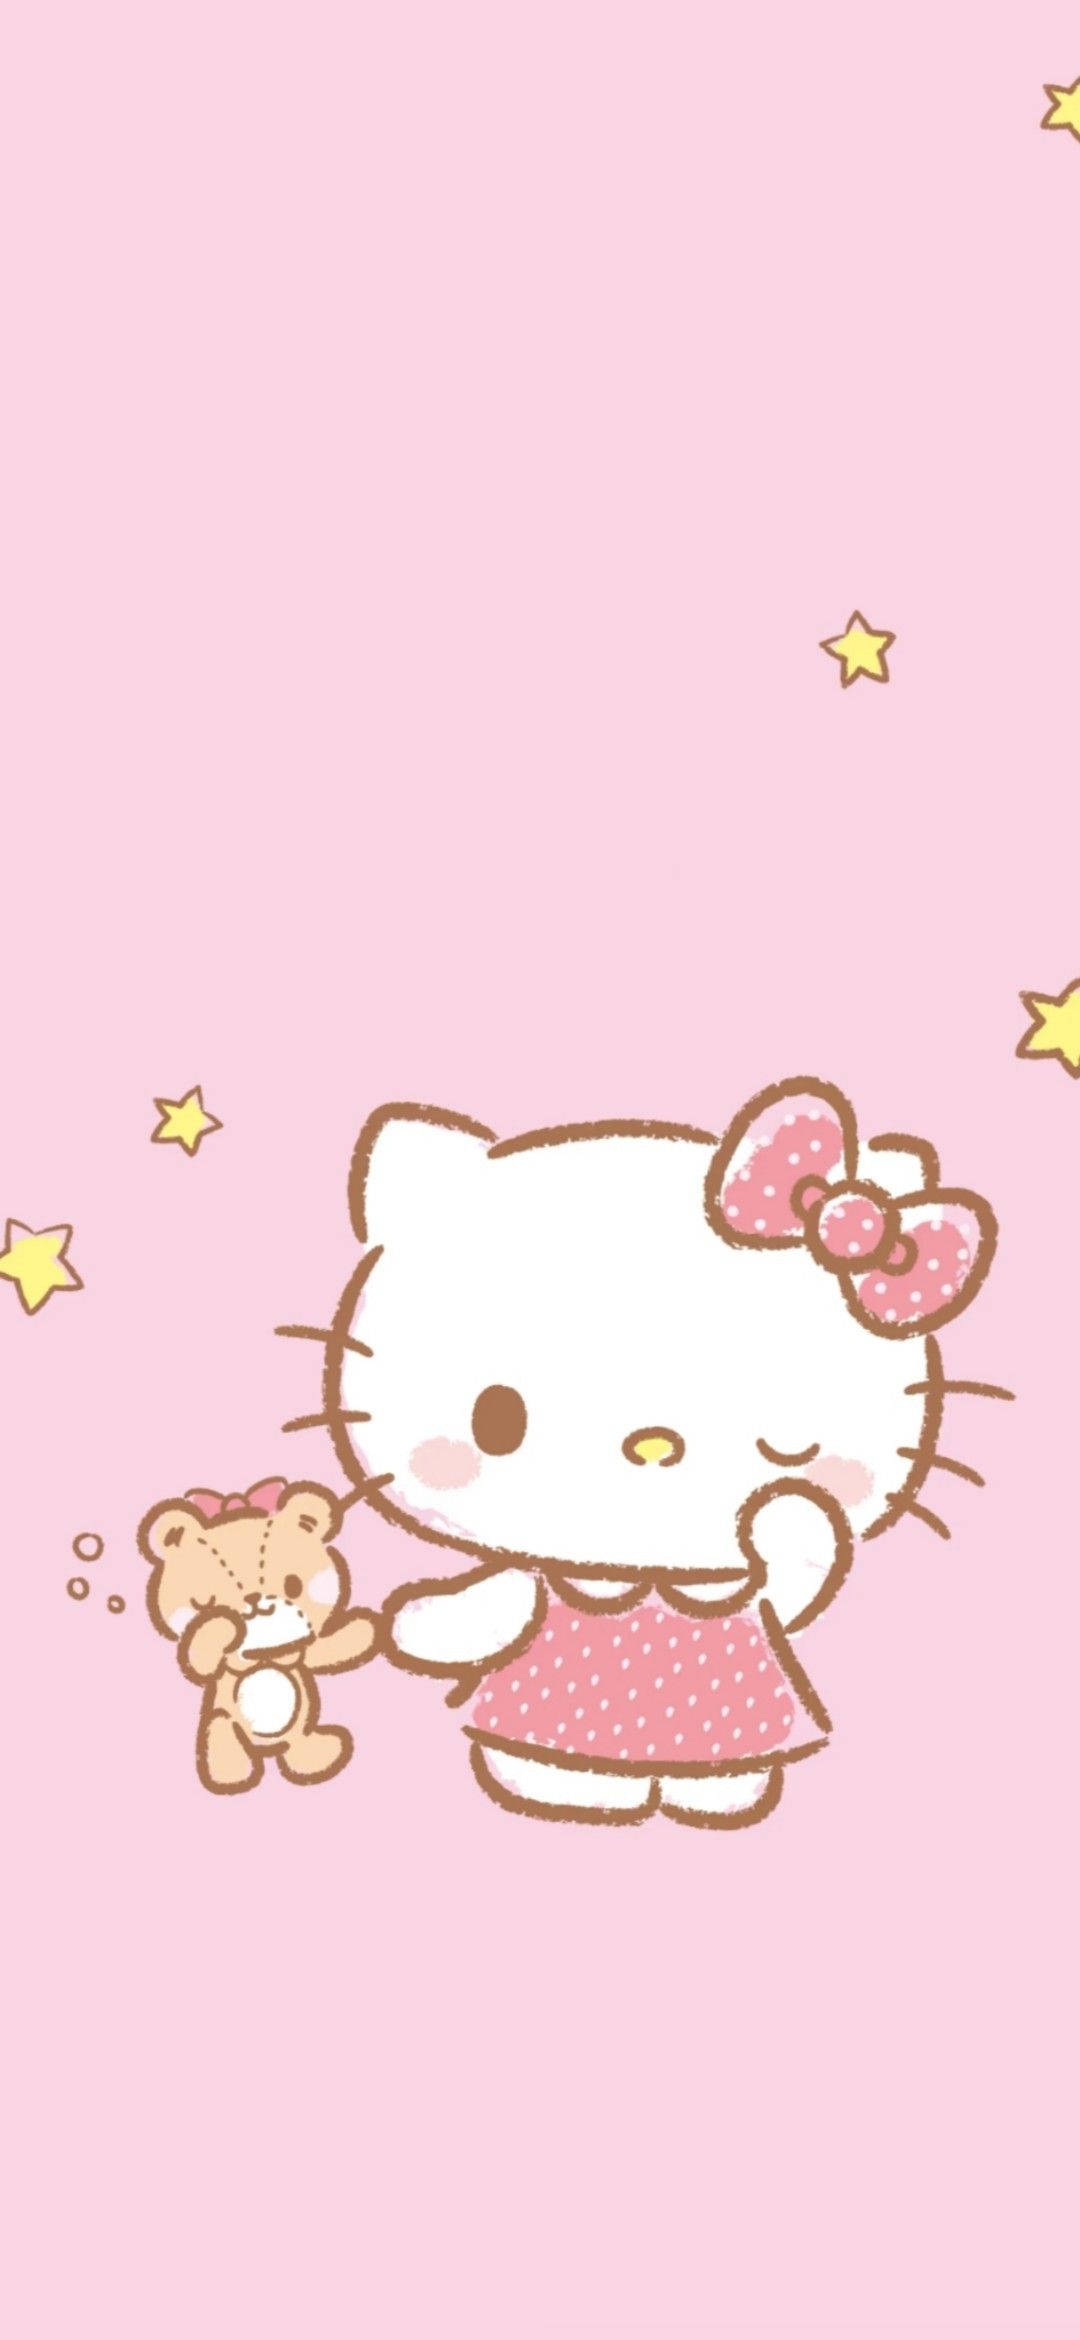 Hello kitty wallpaper hd - Hello Kitty